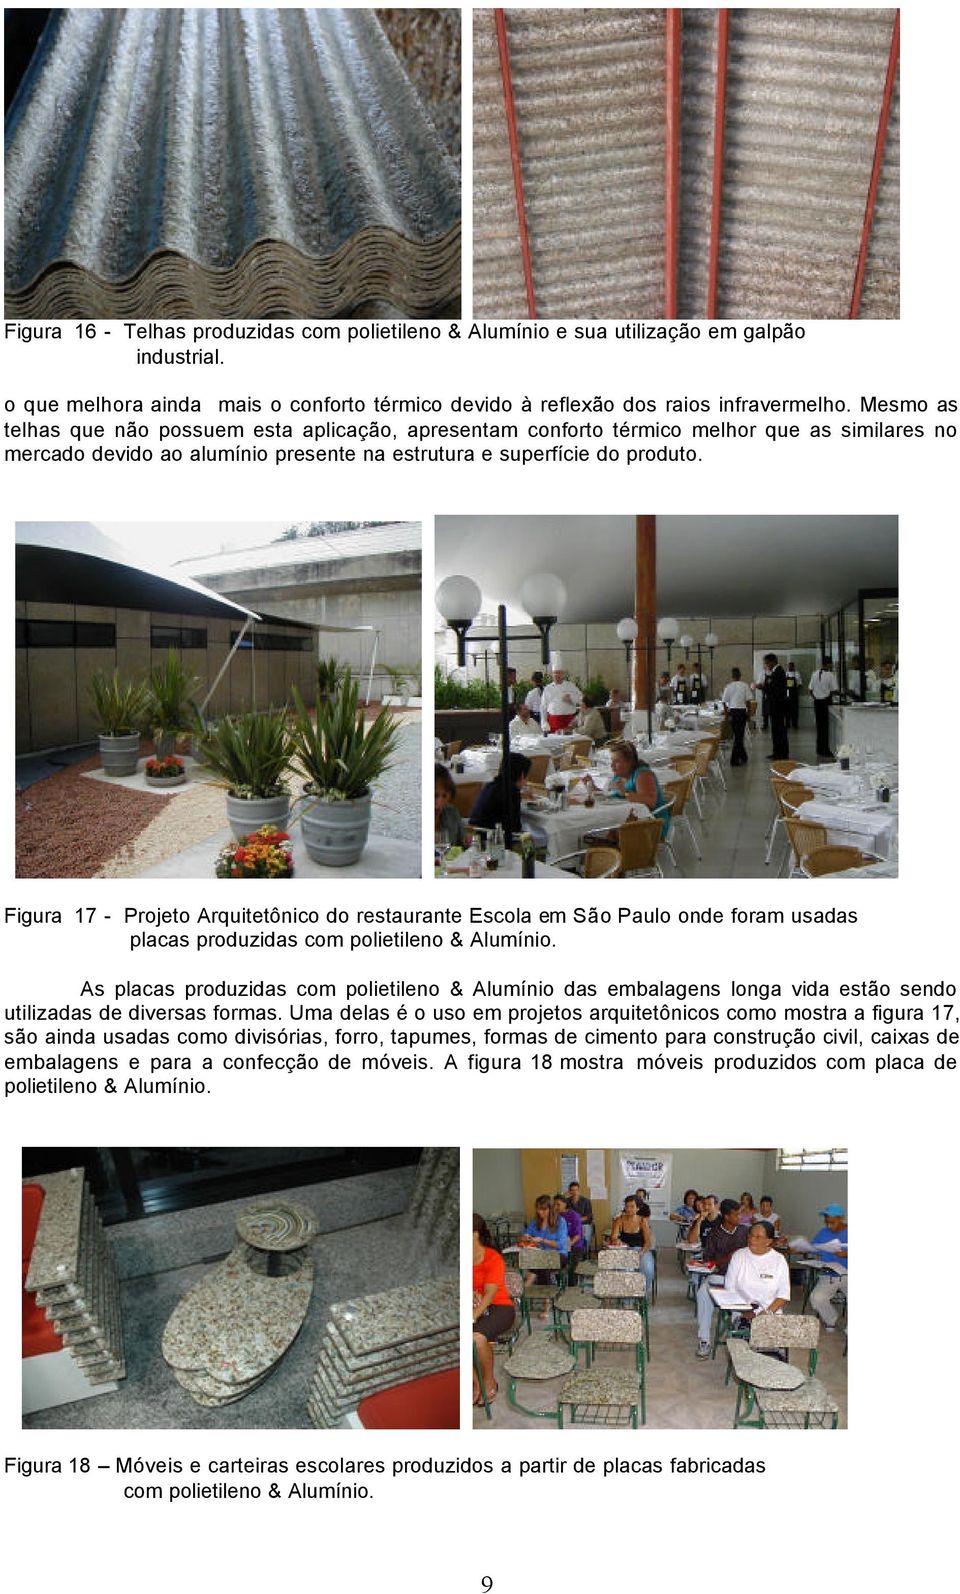 Figura 17 - Projeto Arquitetônico do restaurante Escola em São Paulo onde foram usadas placas produzidas com polietileno & Alumínio.